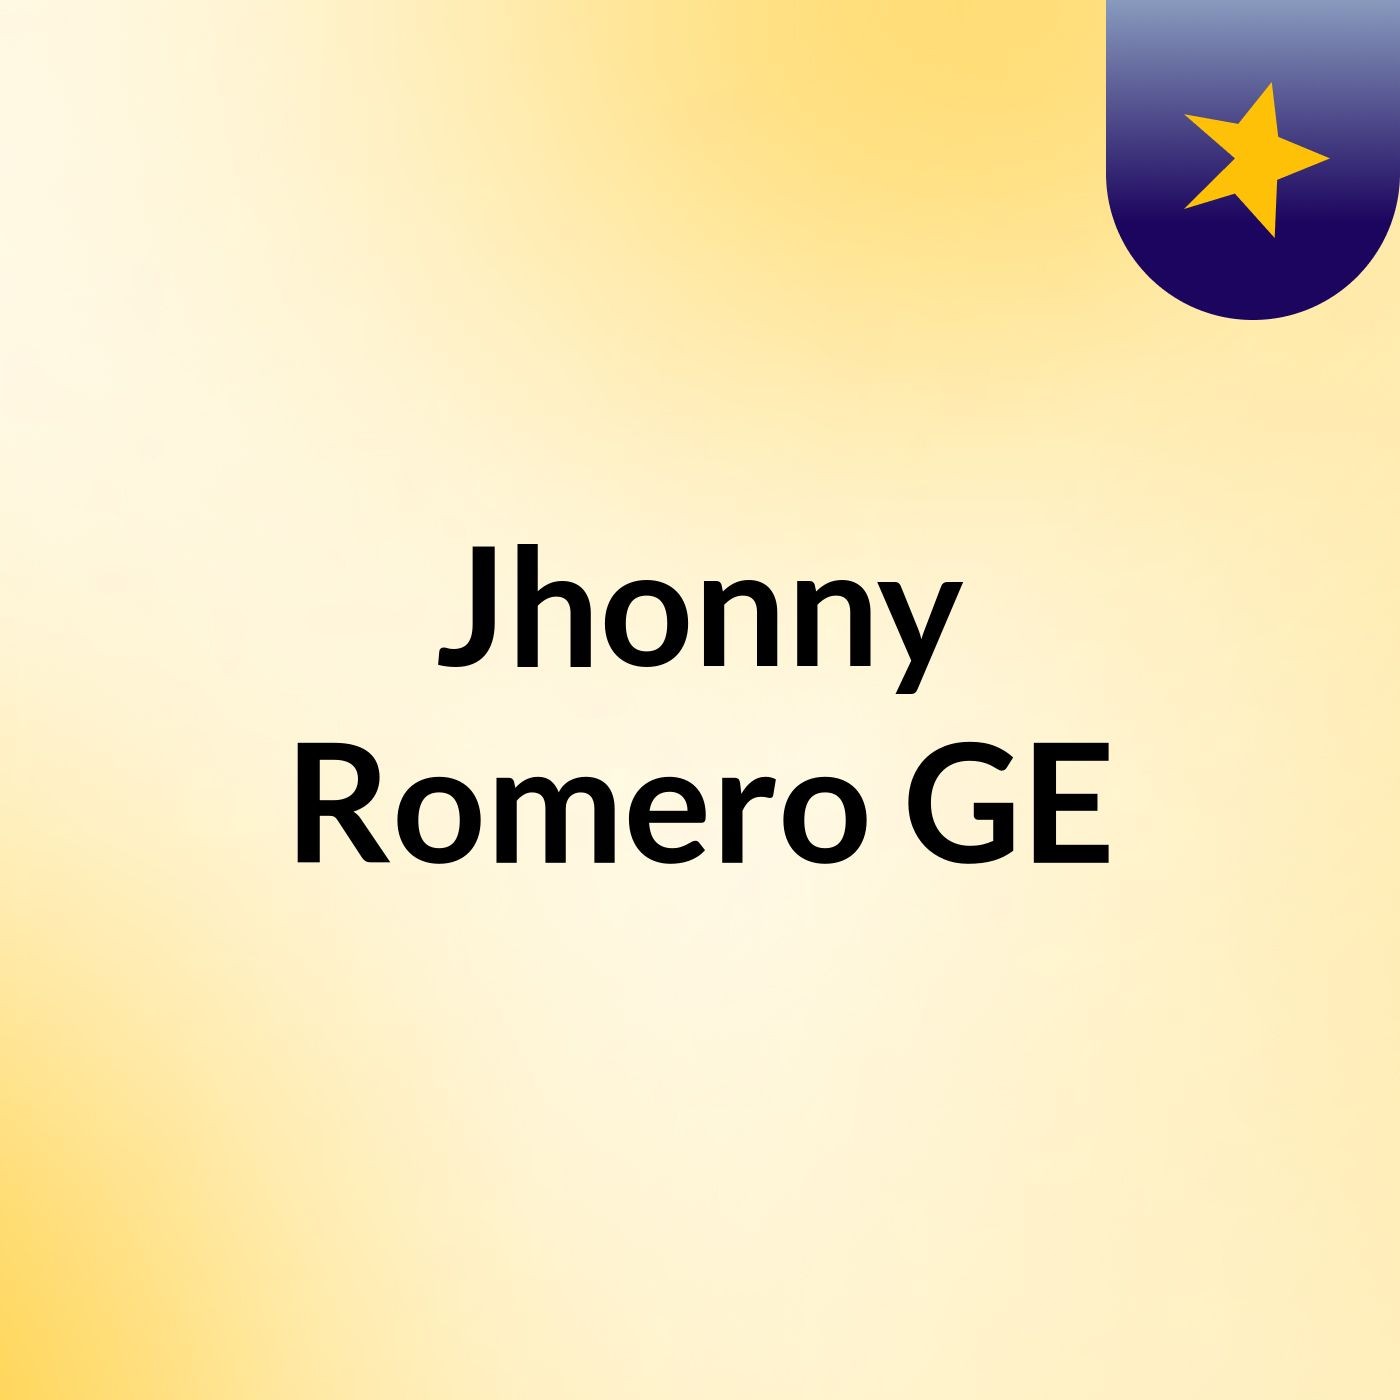 Jhonny Romero GE